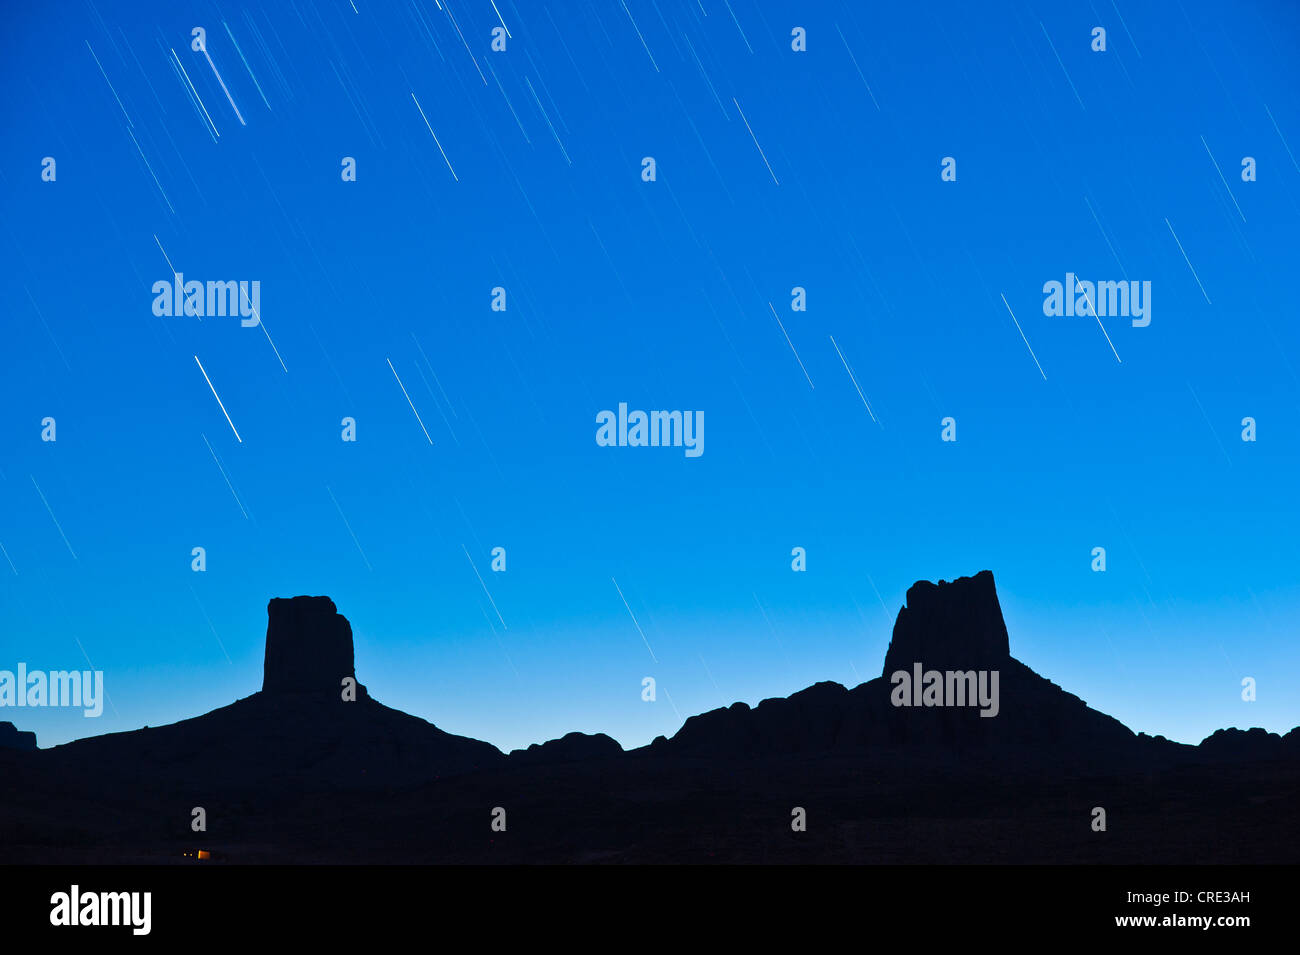 Stern-vollgespritzt Himmel über imposante Felsen, genannt Madame und Monsieur, Bab'n Ali, Djebel Sarhro Berge, Südmarokko Stockfoto